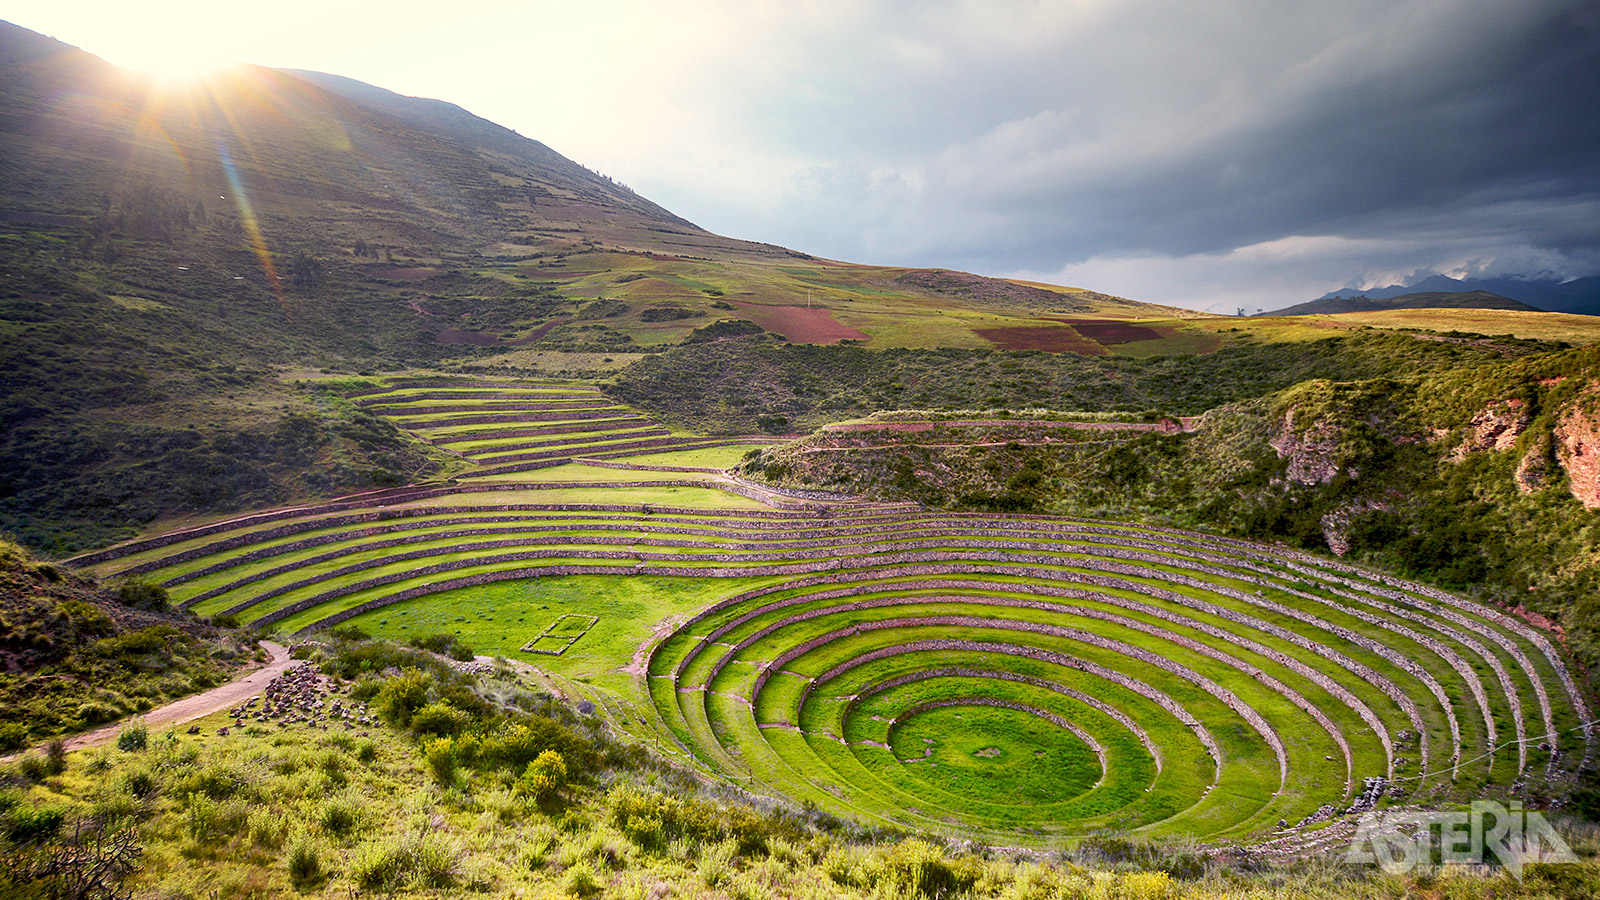 De mysterieuze-Moray terrassen werden mogelijk gebruikt door de Inca’s om het effect bestuderen van klimatologische omstandigheden op gewassen